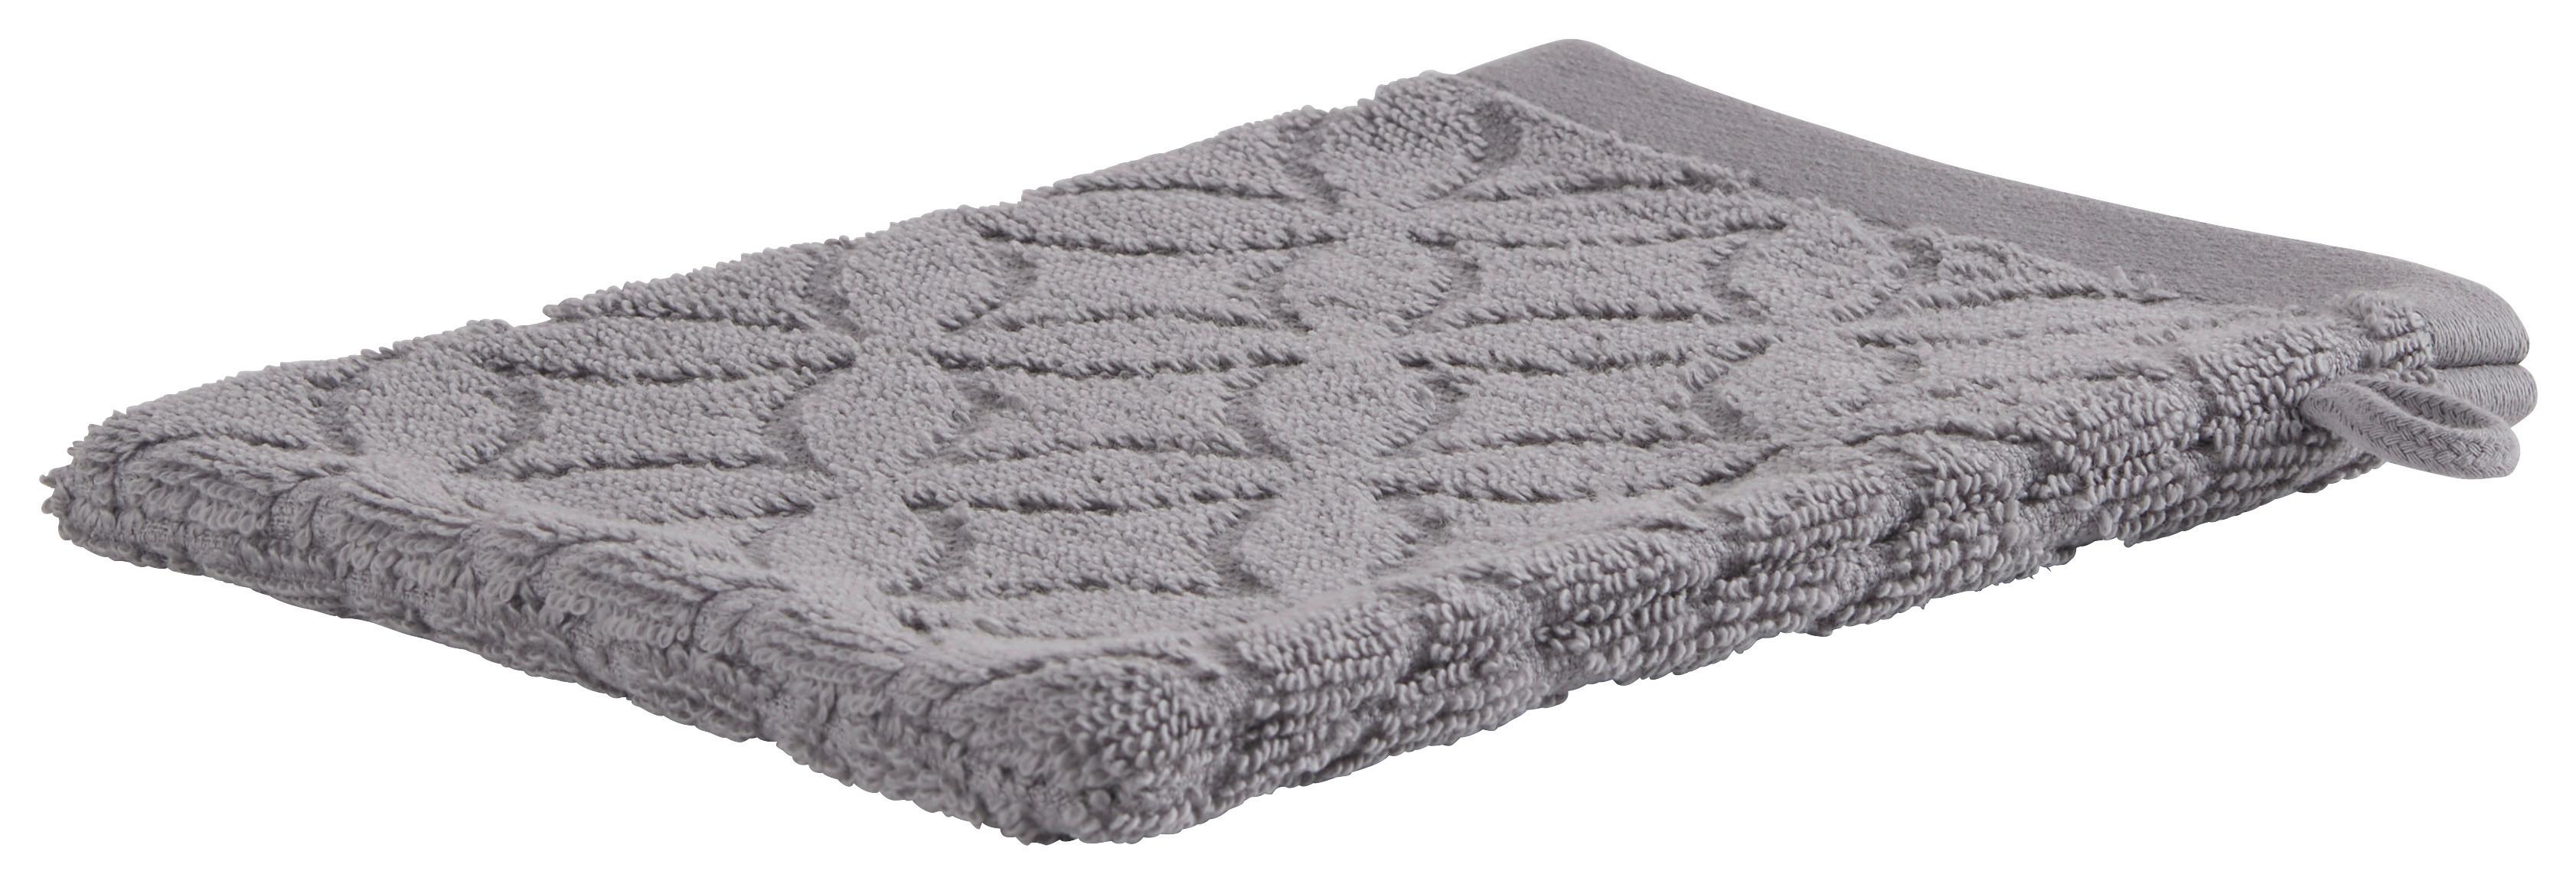 Waschlappen Naime in Grau ca. 16x21cm - Grau, LIFESTYLE, Textil (16/21cm) - Modern Living